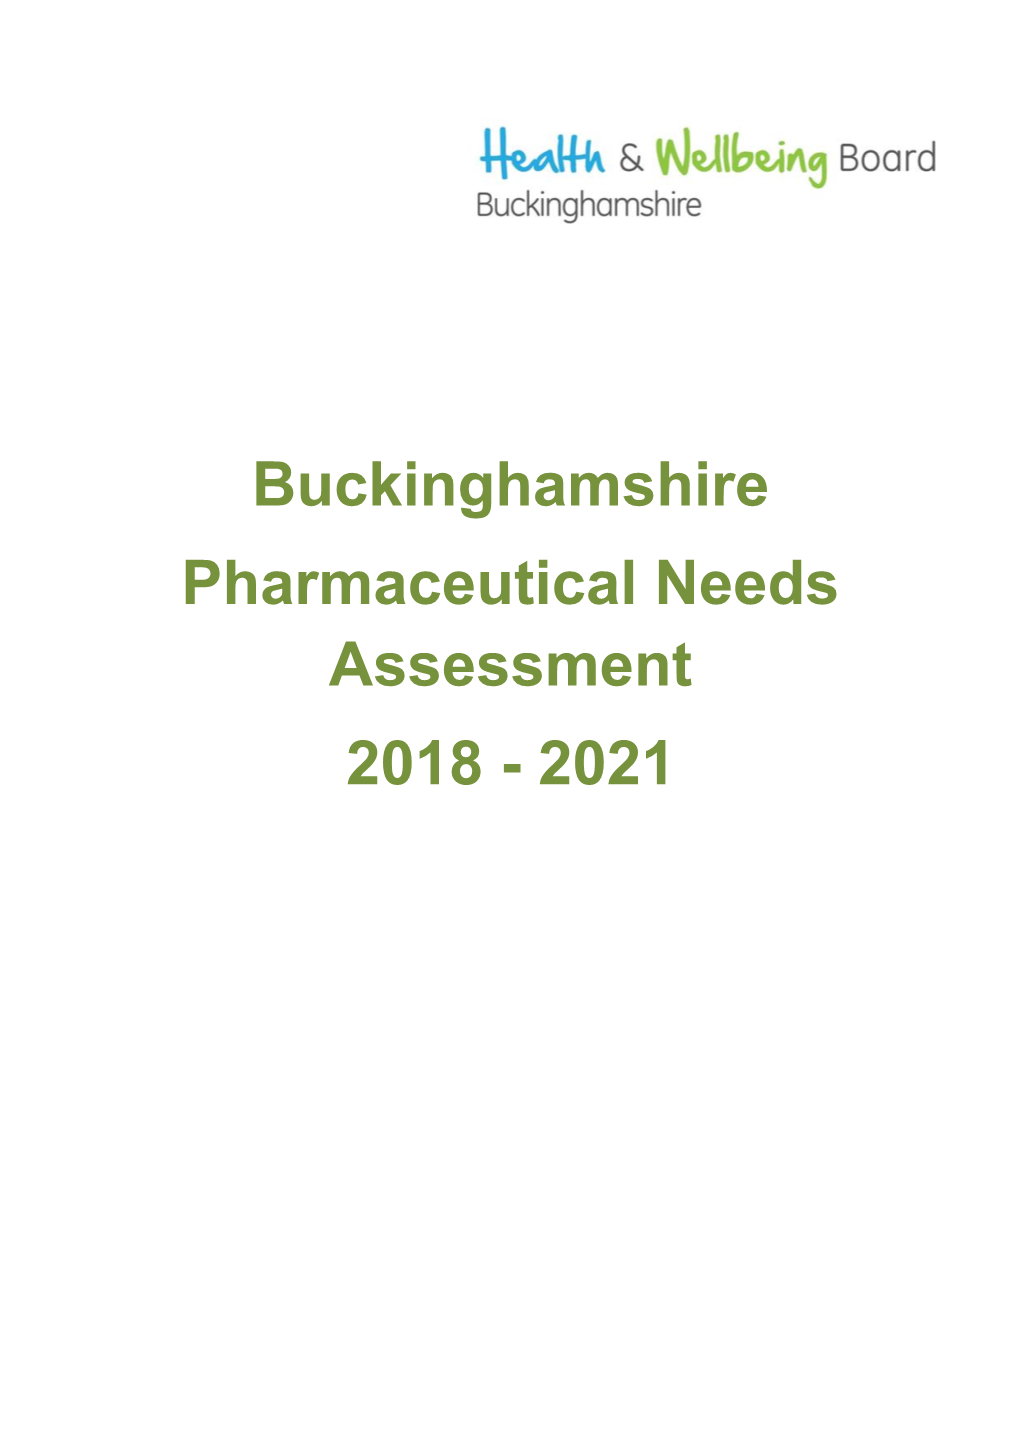 Buckinghamshire Pharmaceutical Needs Assessment 2018 - 2021